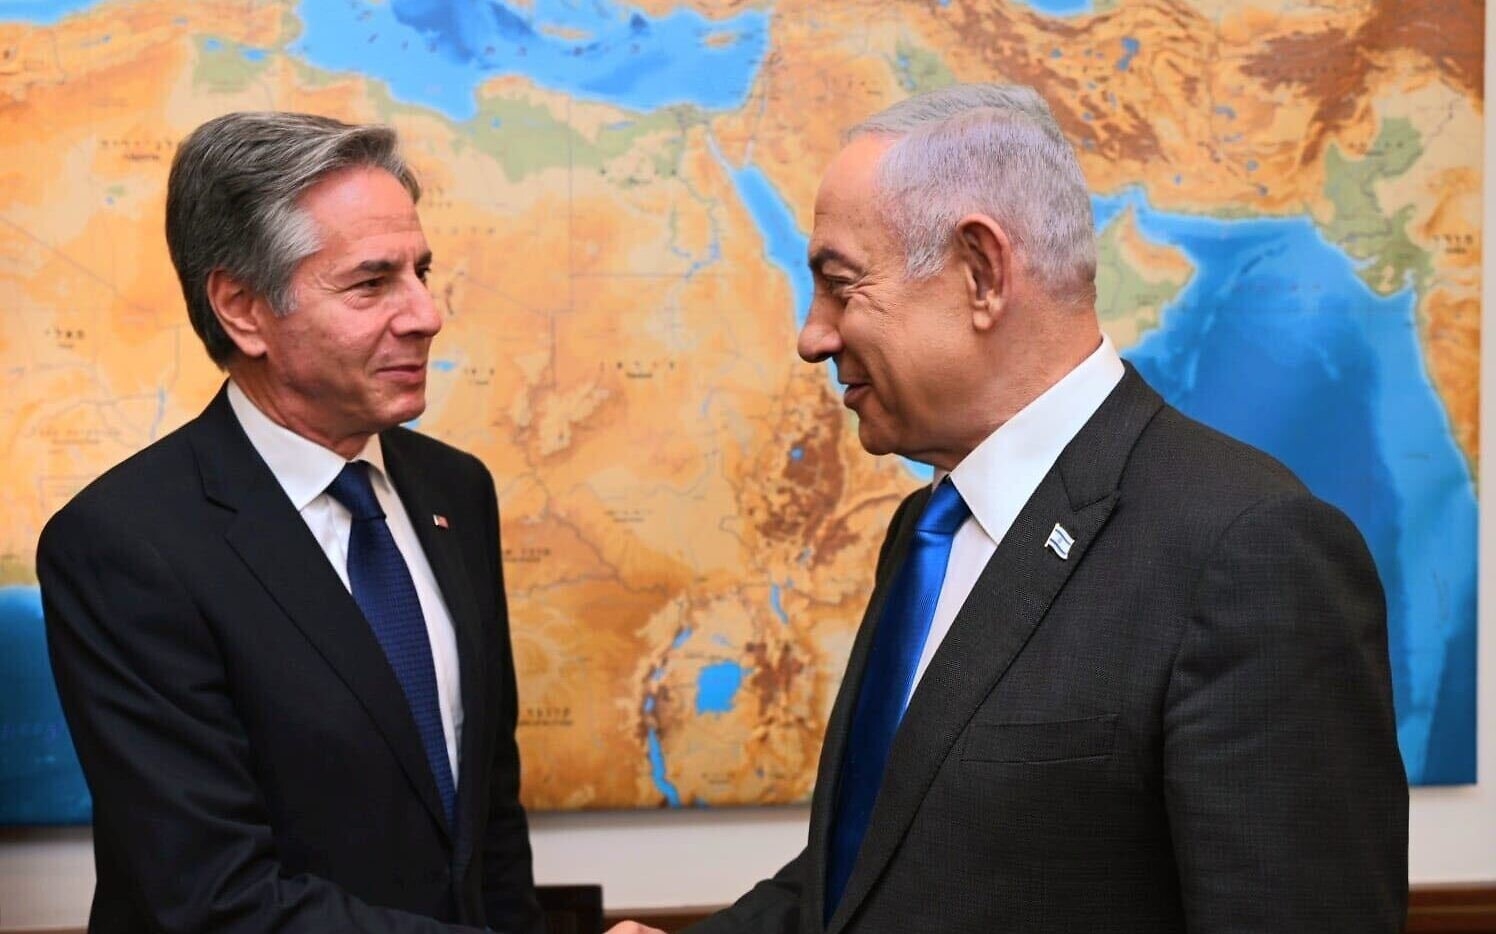 Netanyahu, Blinken begin private discussion in Jerusalem